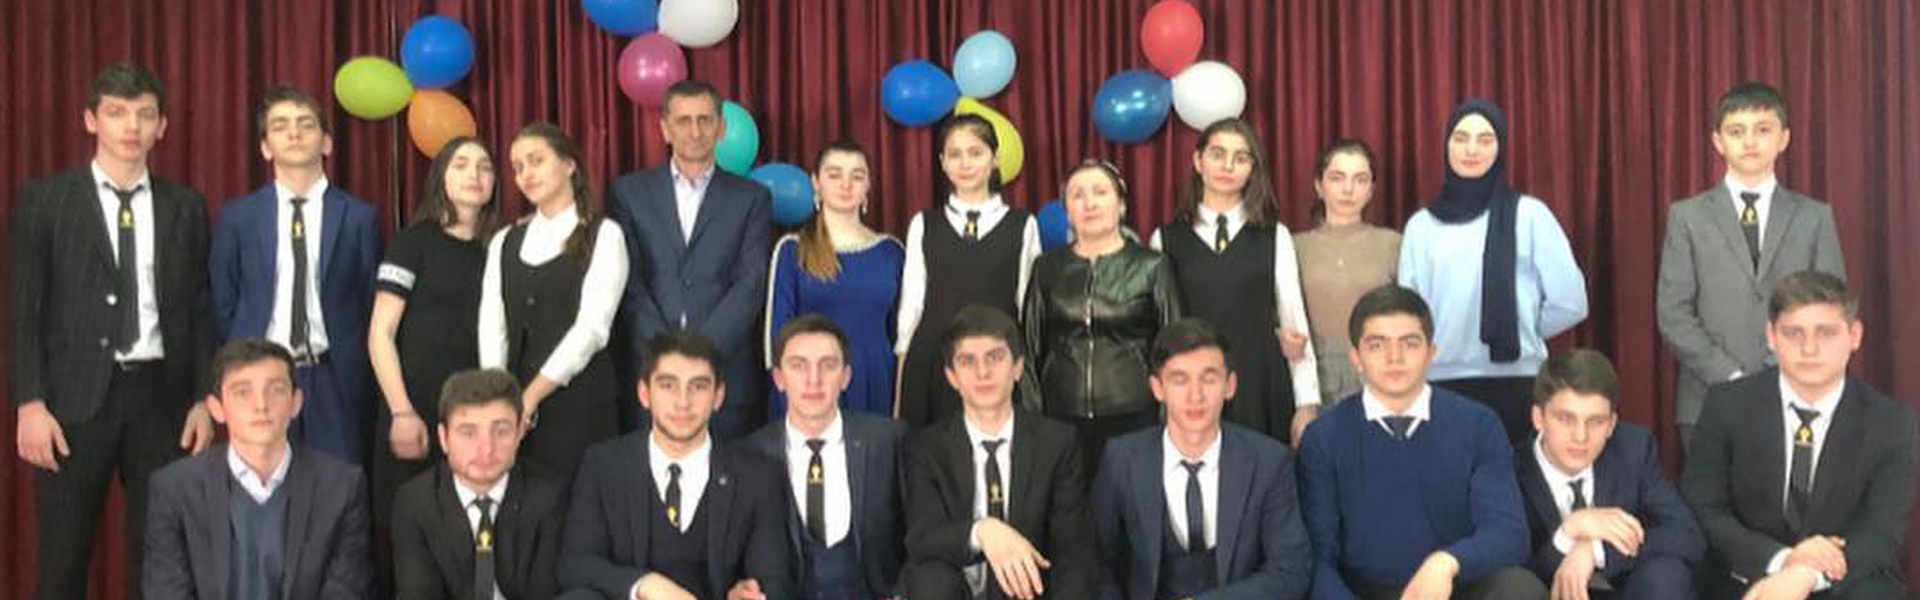 Всероссийский конкурс "Ученик года - 2019"